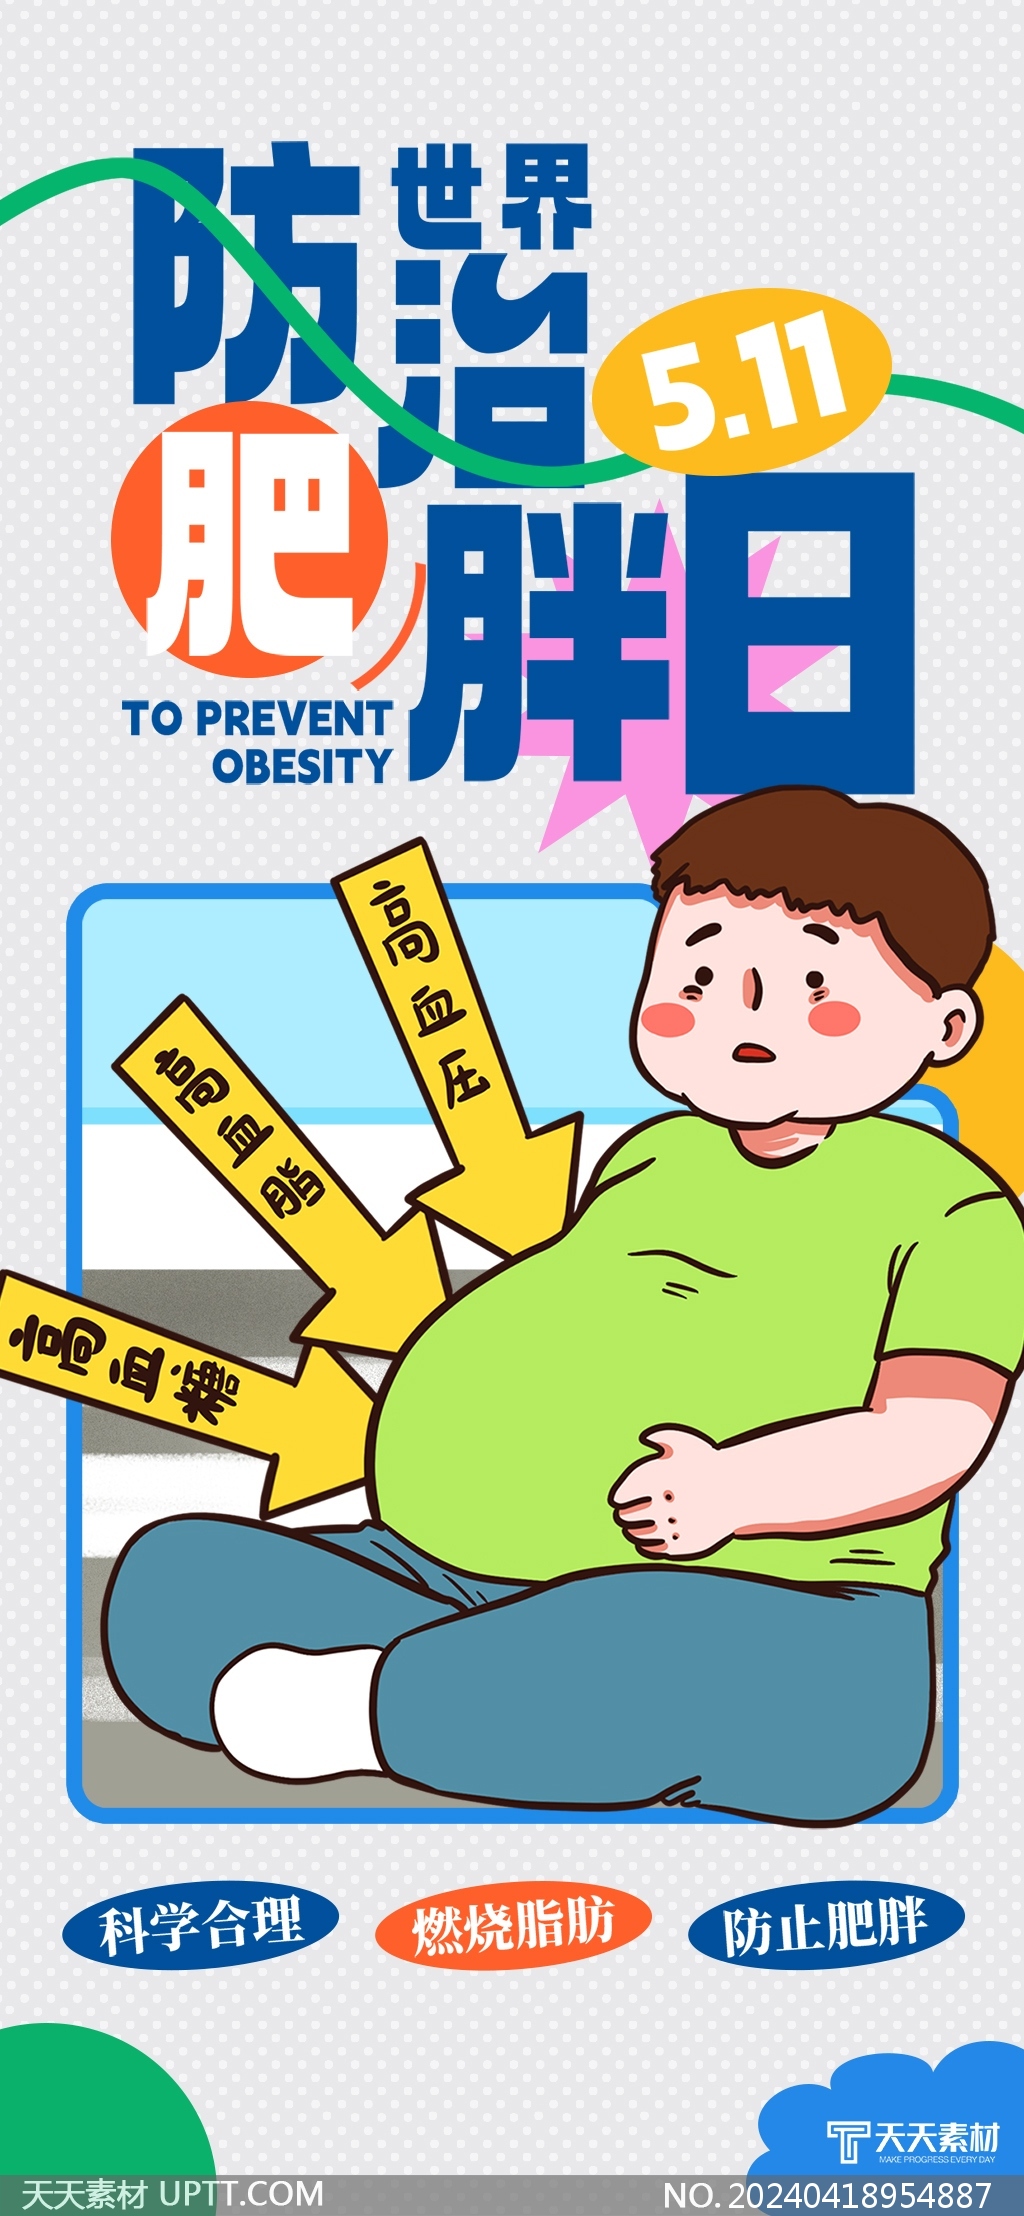 511世界防治肥胖日医疗健康宣传插画海报模板